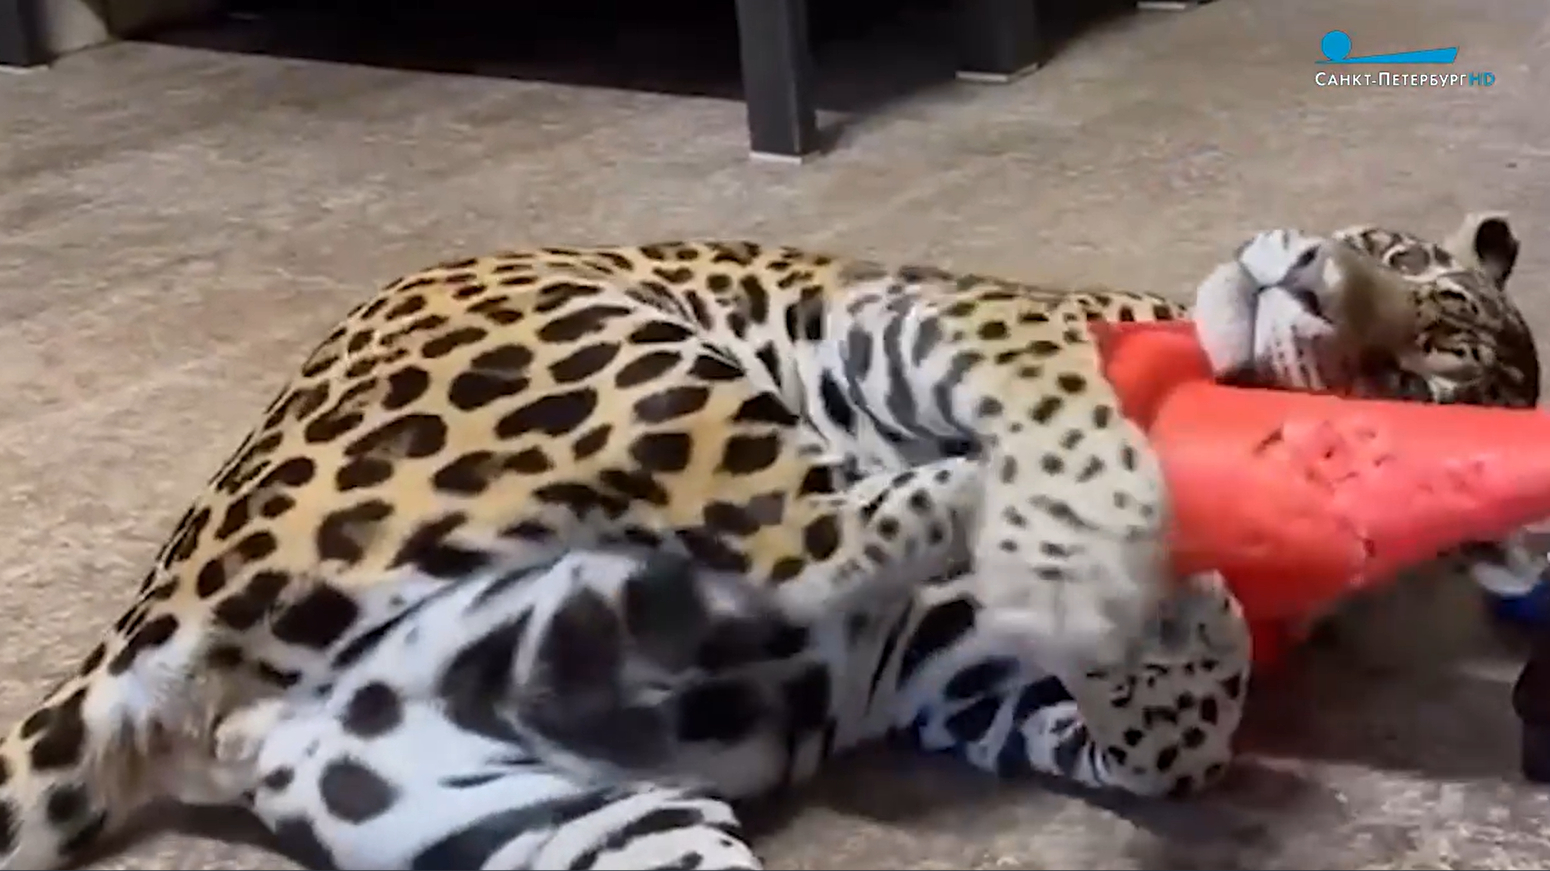 Ленинградский зоопарк продемонстрировал зарядку пожилого ягуара Агнессы